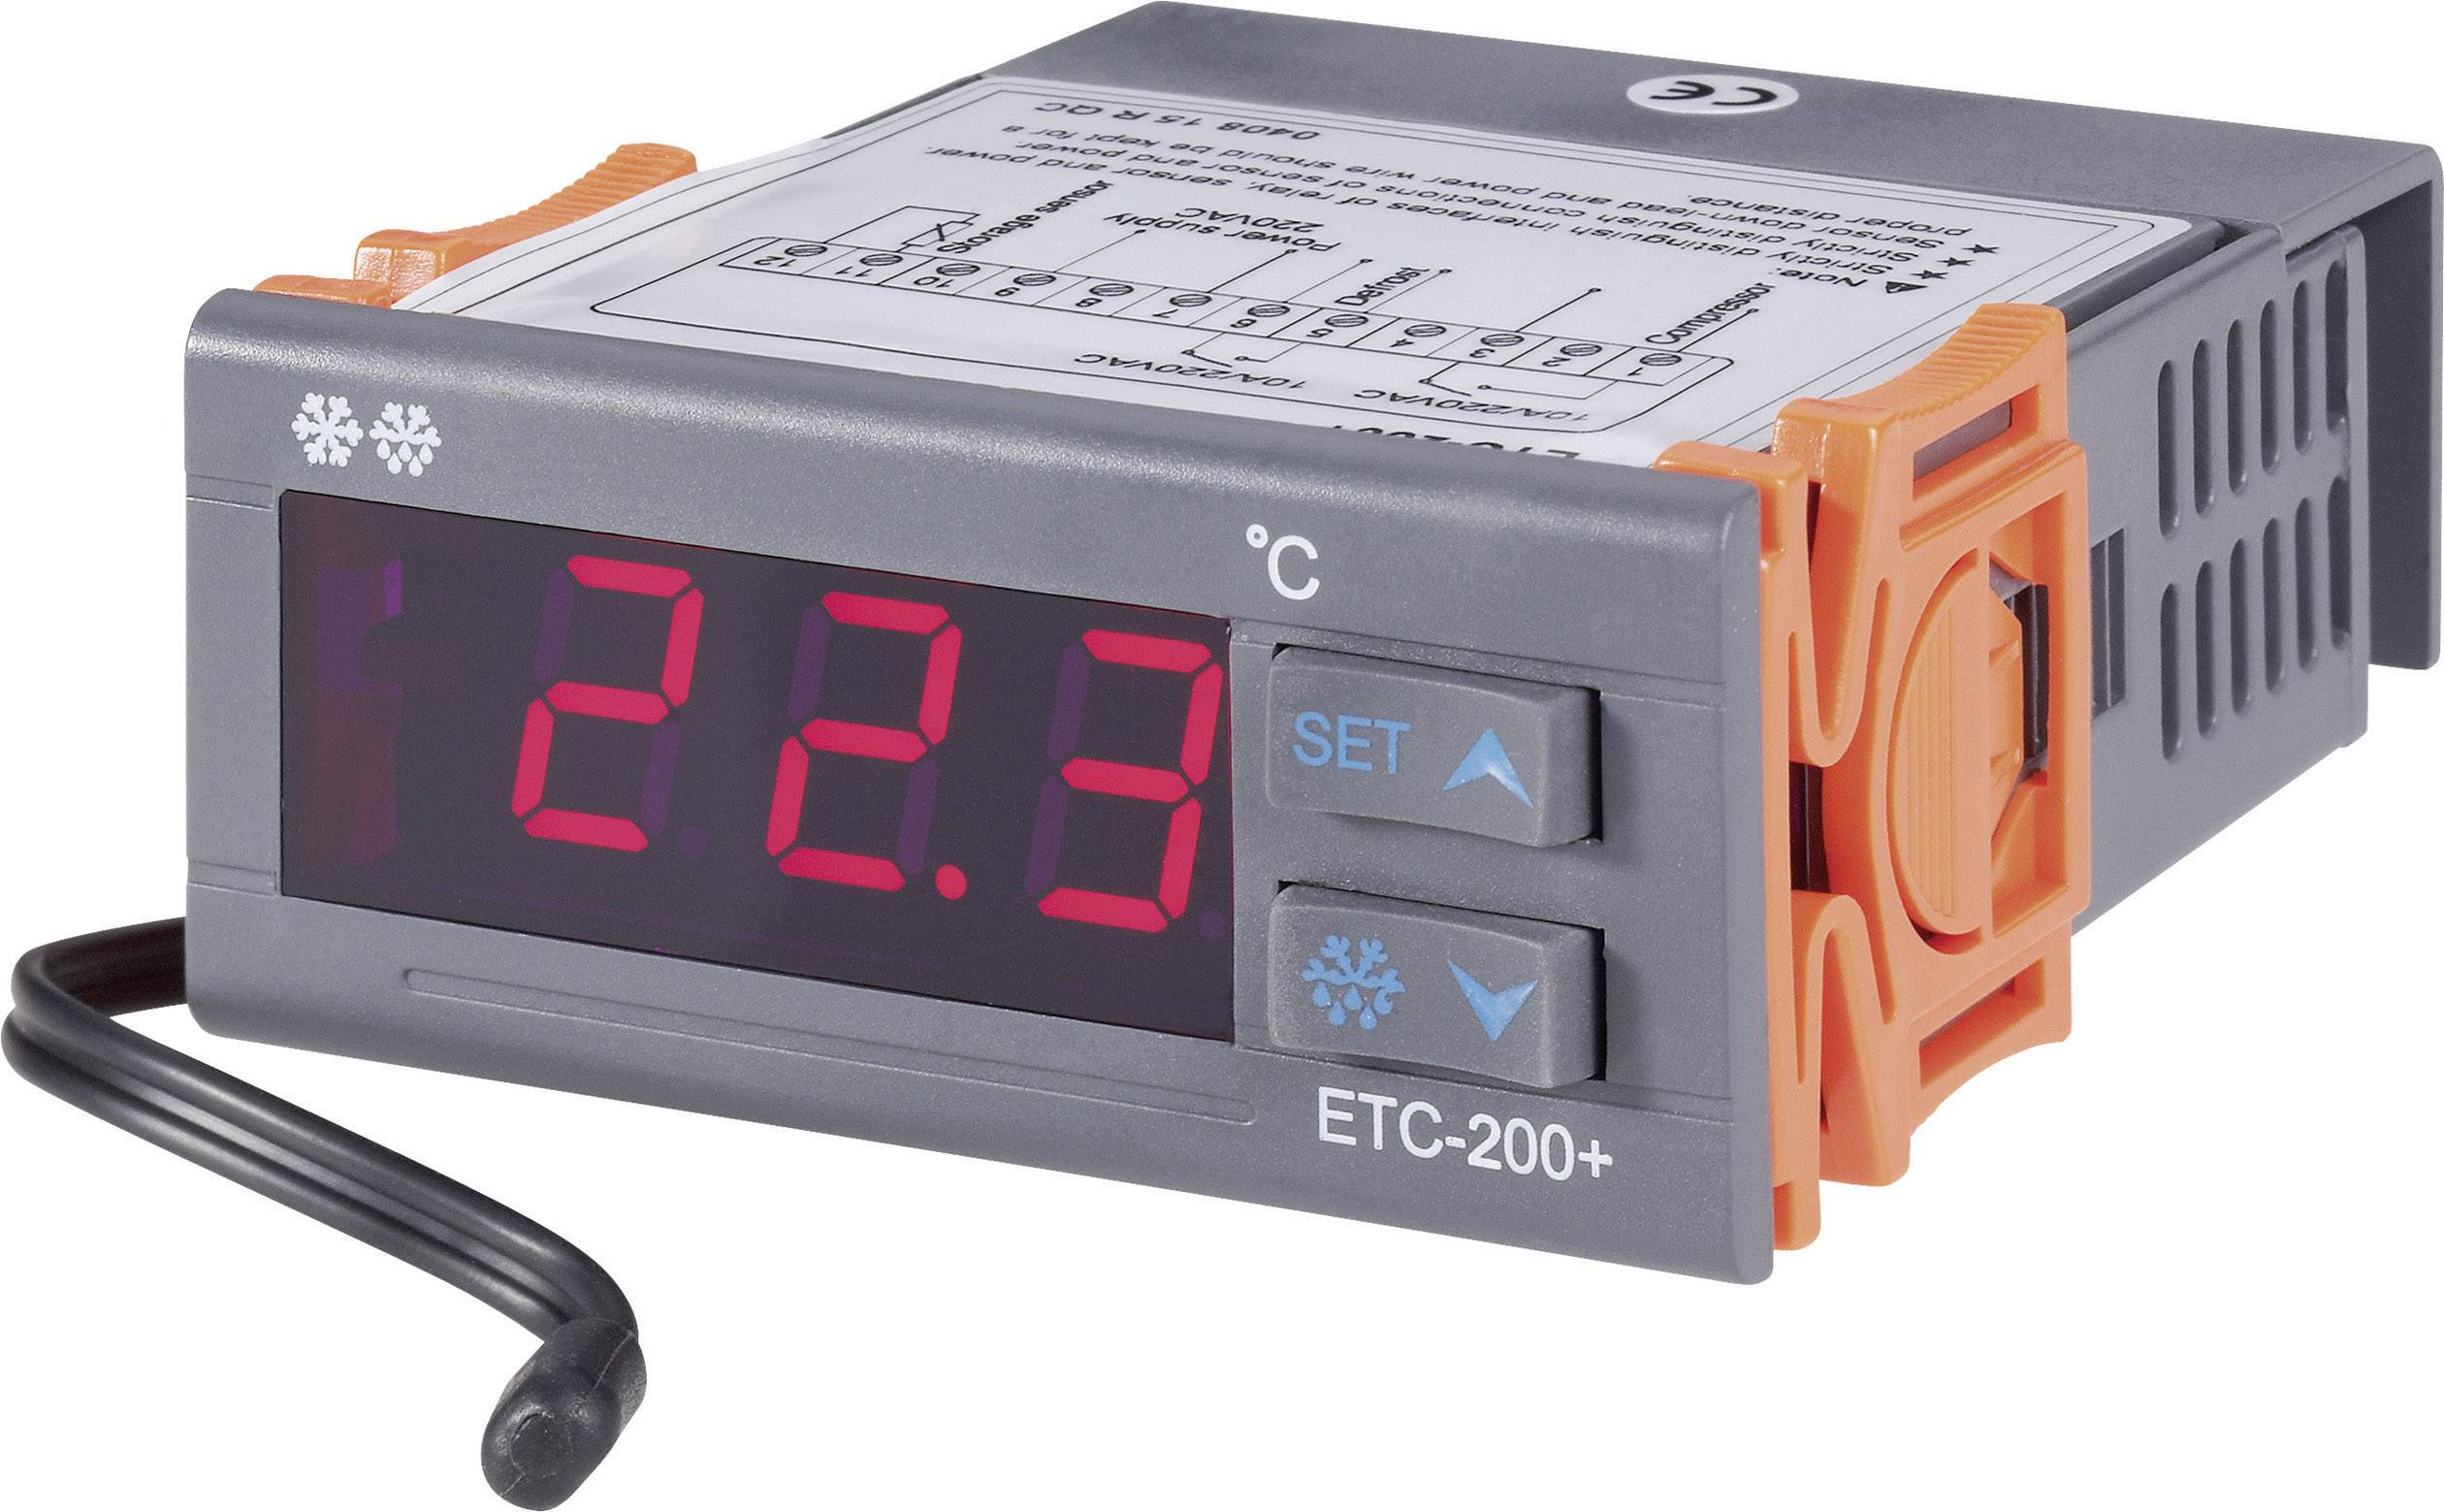 Température Régulateur Thermostat digital programmable sortie potentialfrei #810 